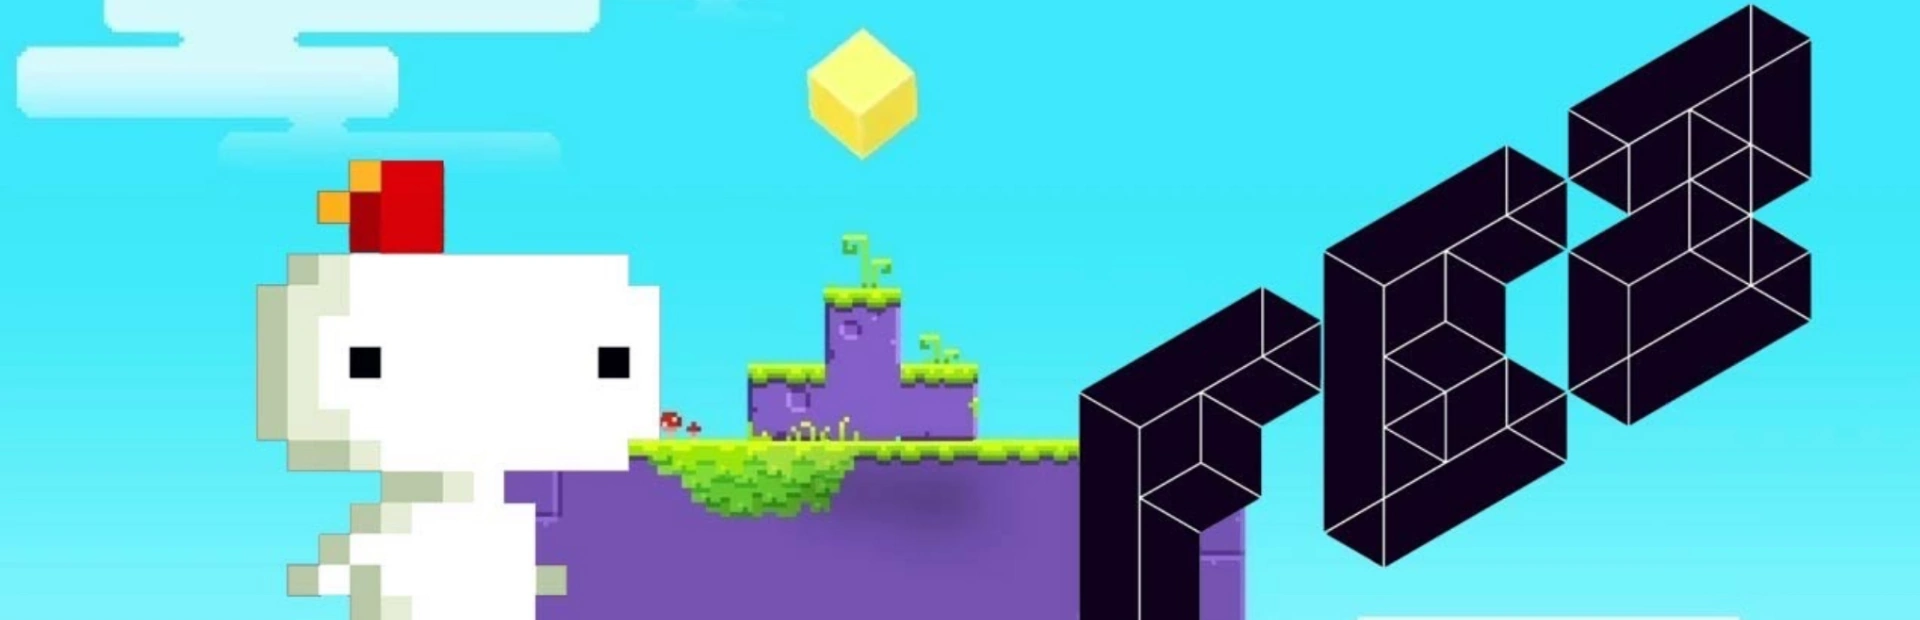 دانلود بازی Fez برای کامپیوتر بدون نیاز به کرک  | گیمباتو